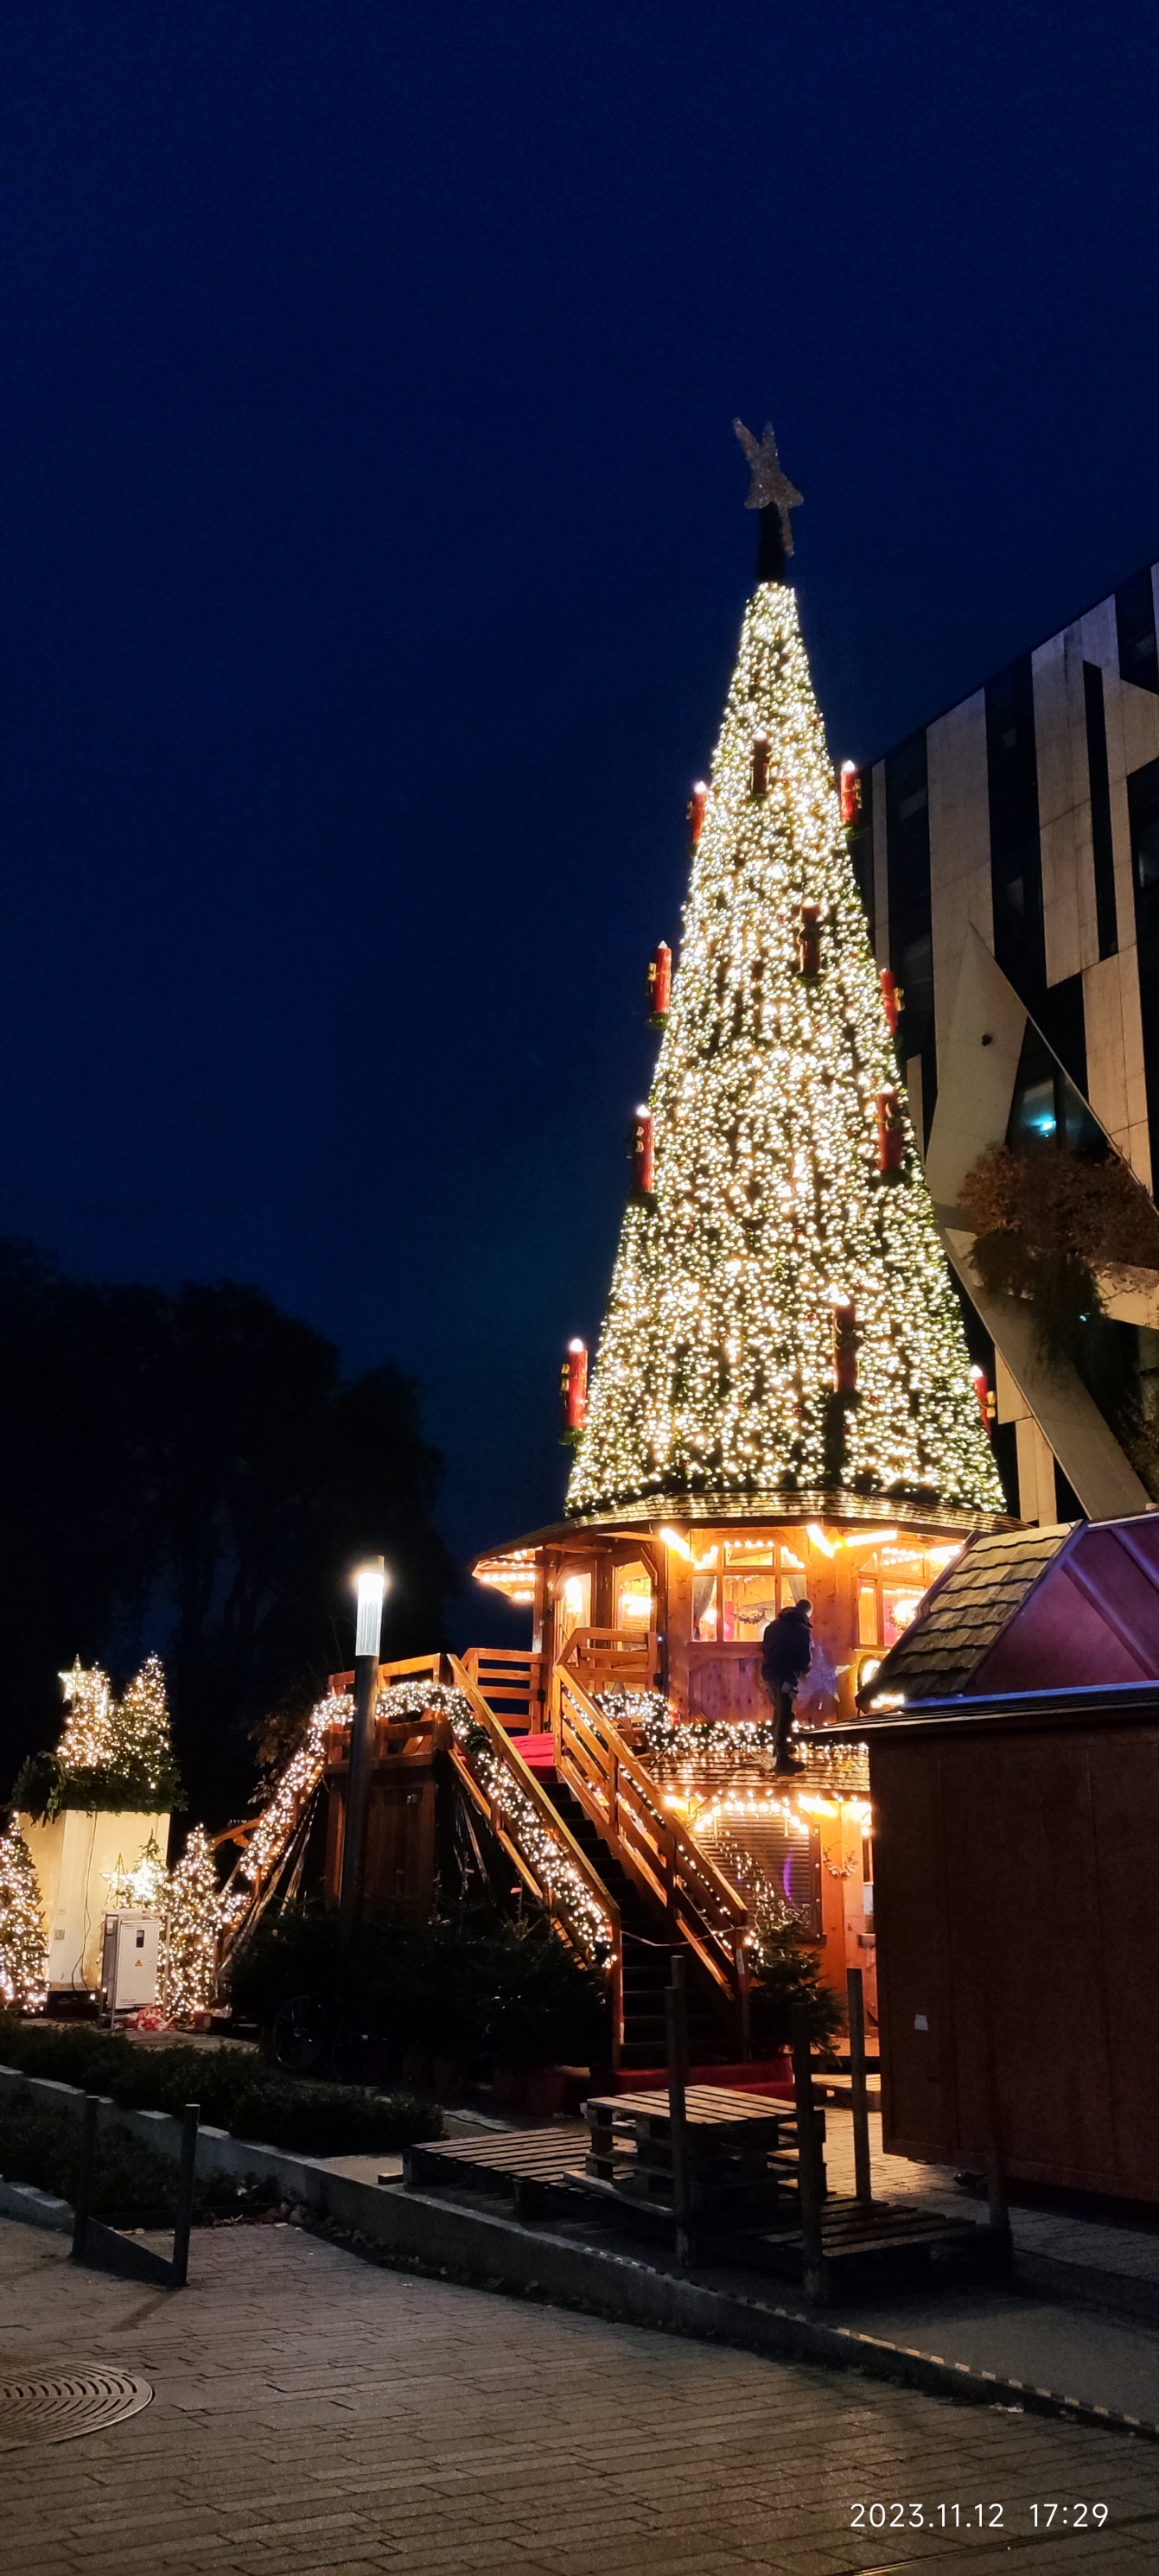 德国人特别喜欢圣诞节，这不，才11月中旬就开始有圣诞市集了。杜塞尔多夫夜景不错吧。